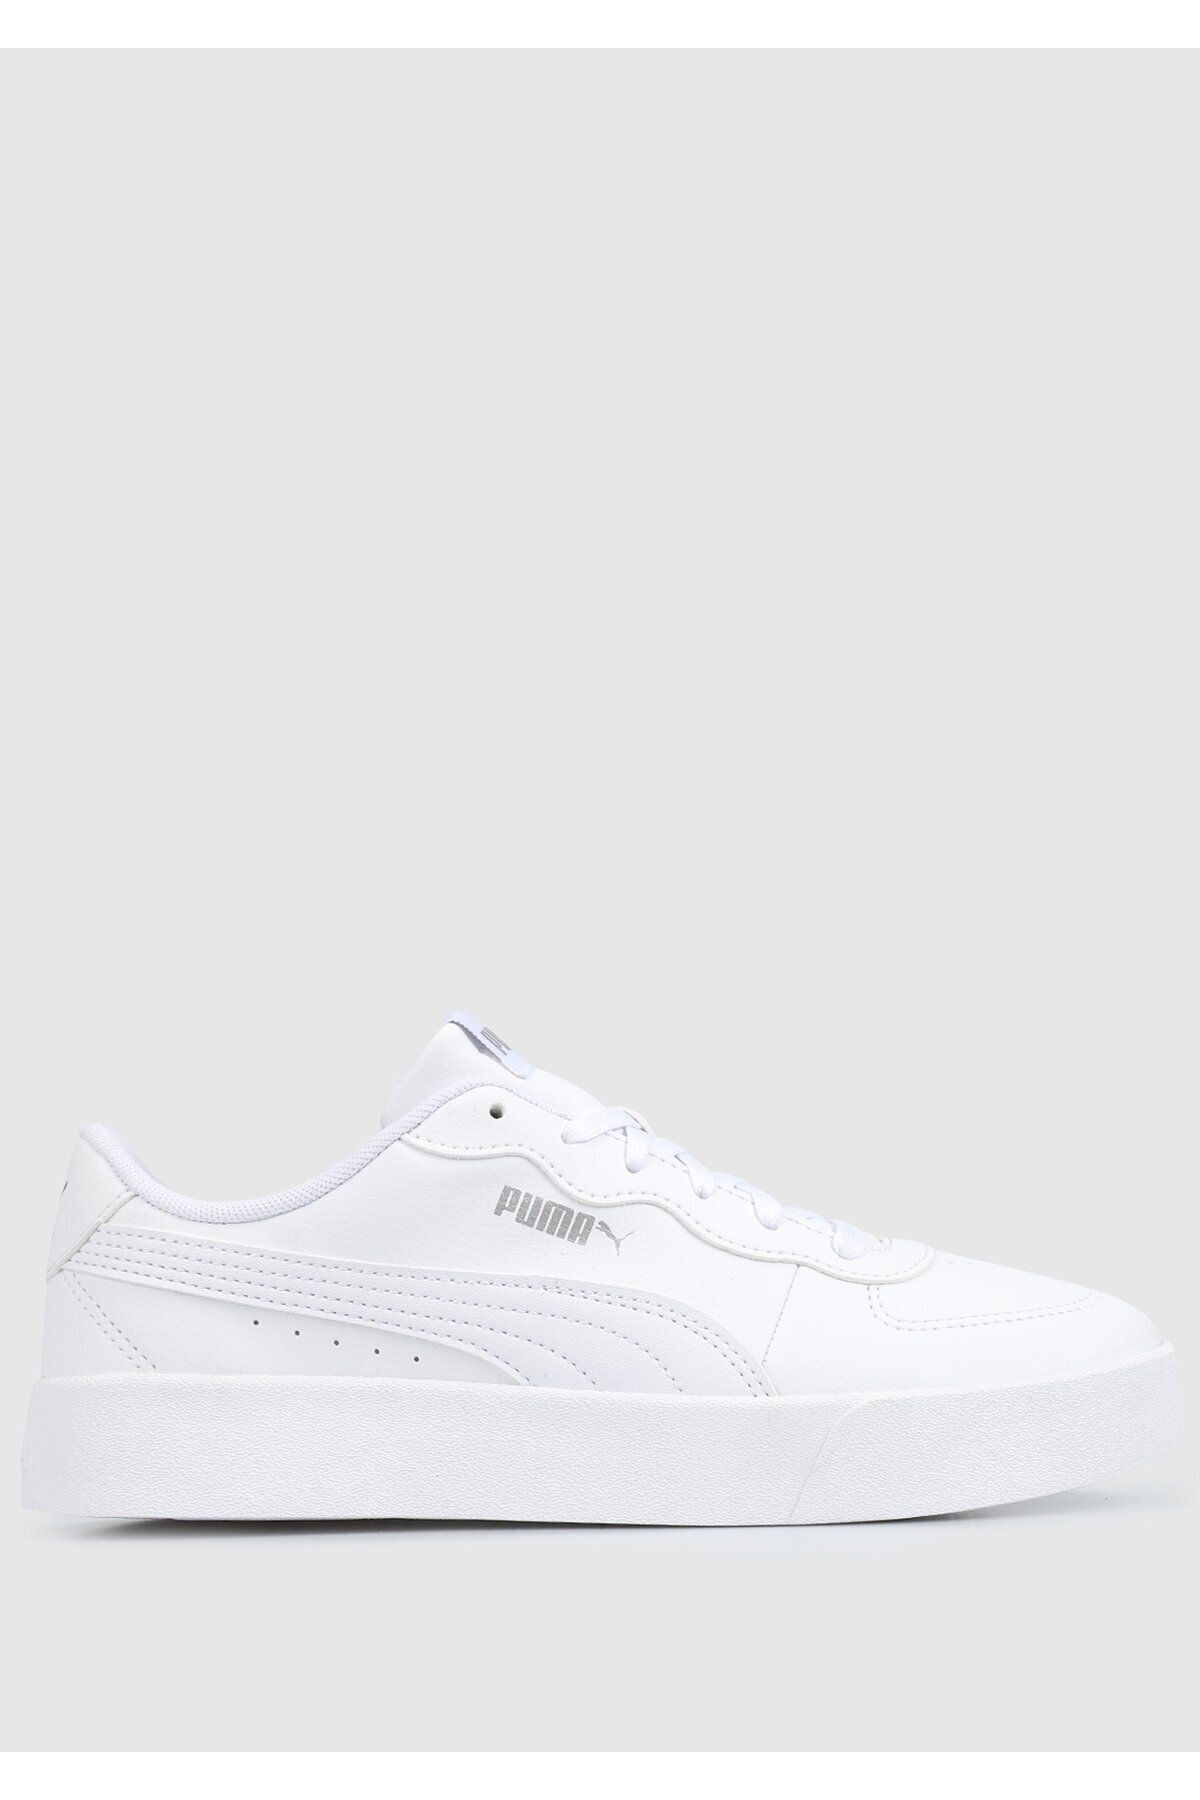 Puma Skye Clean Beyaz Kadın Sneaker 38014702